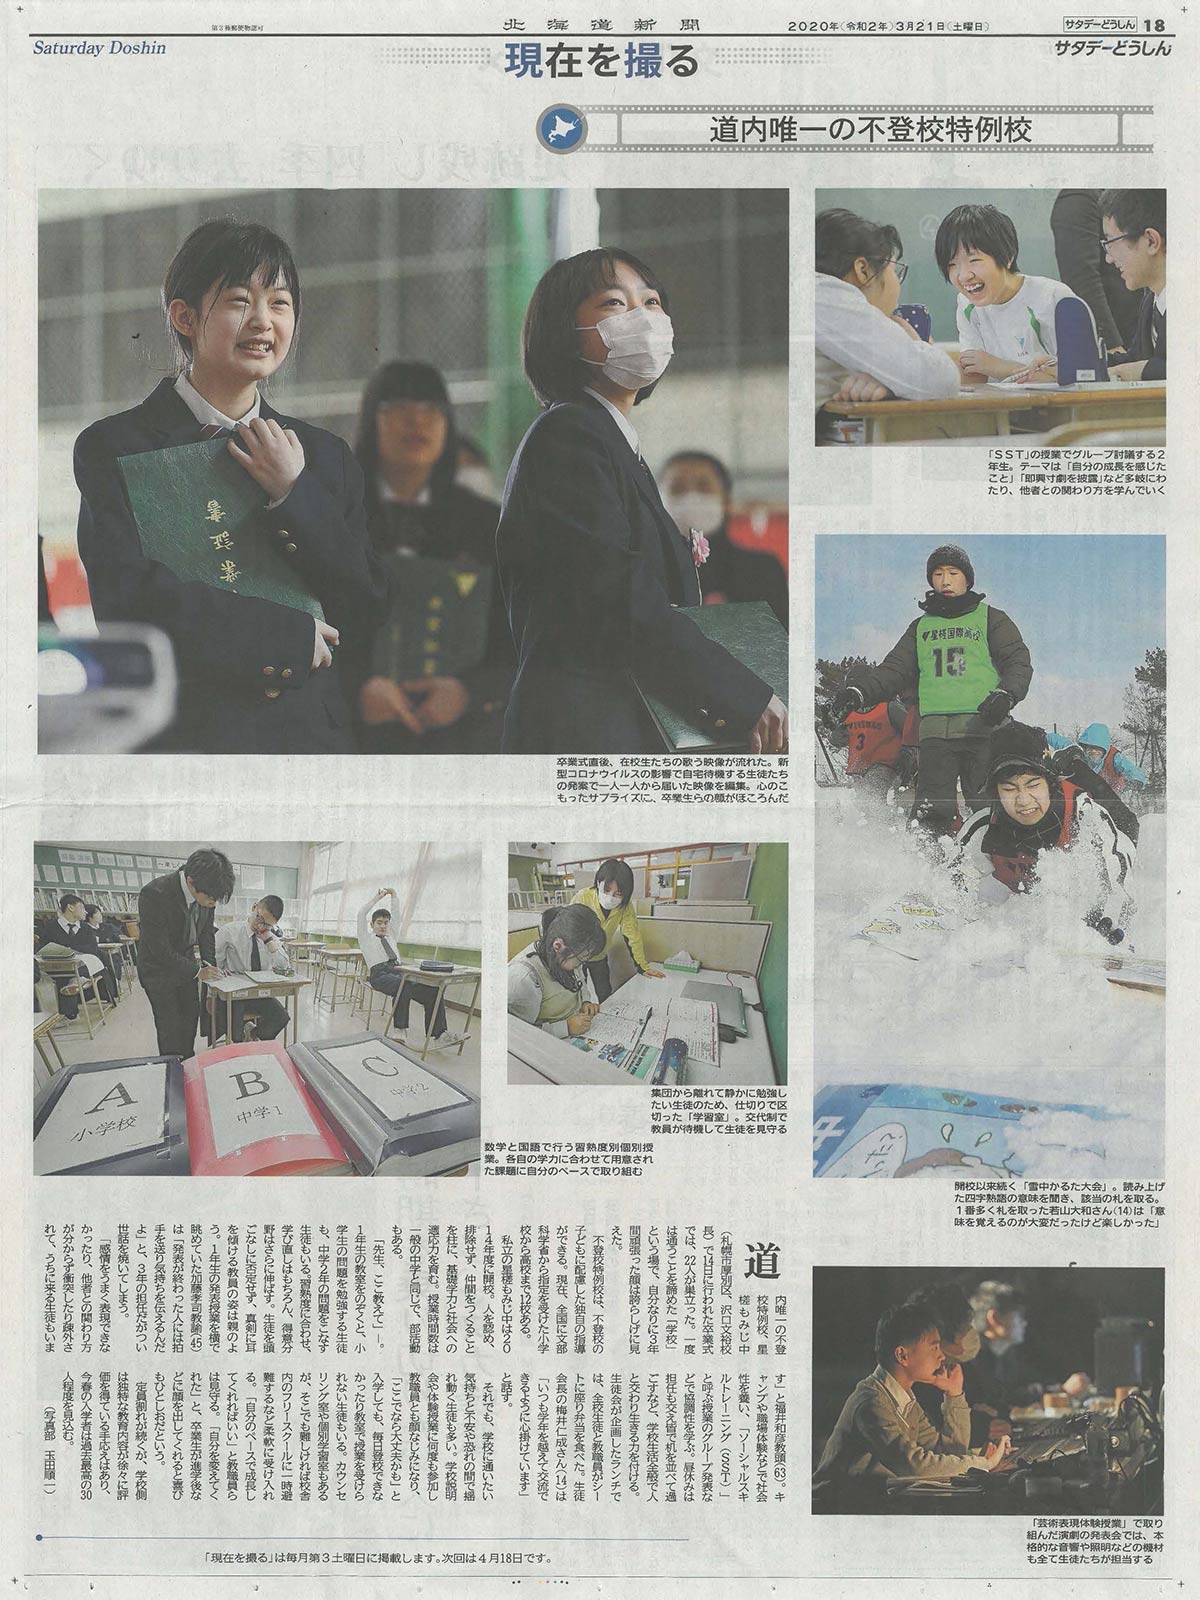 星槎もみじ中学校（北海道札幌市）がメディアに掲載されました。